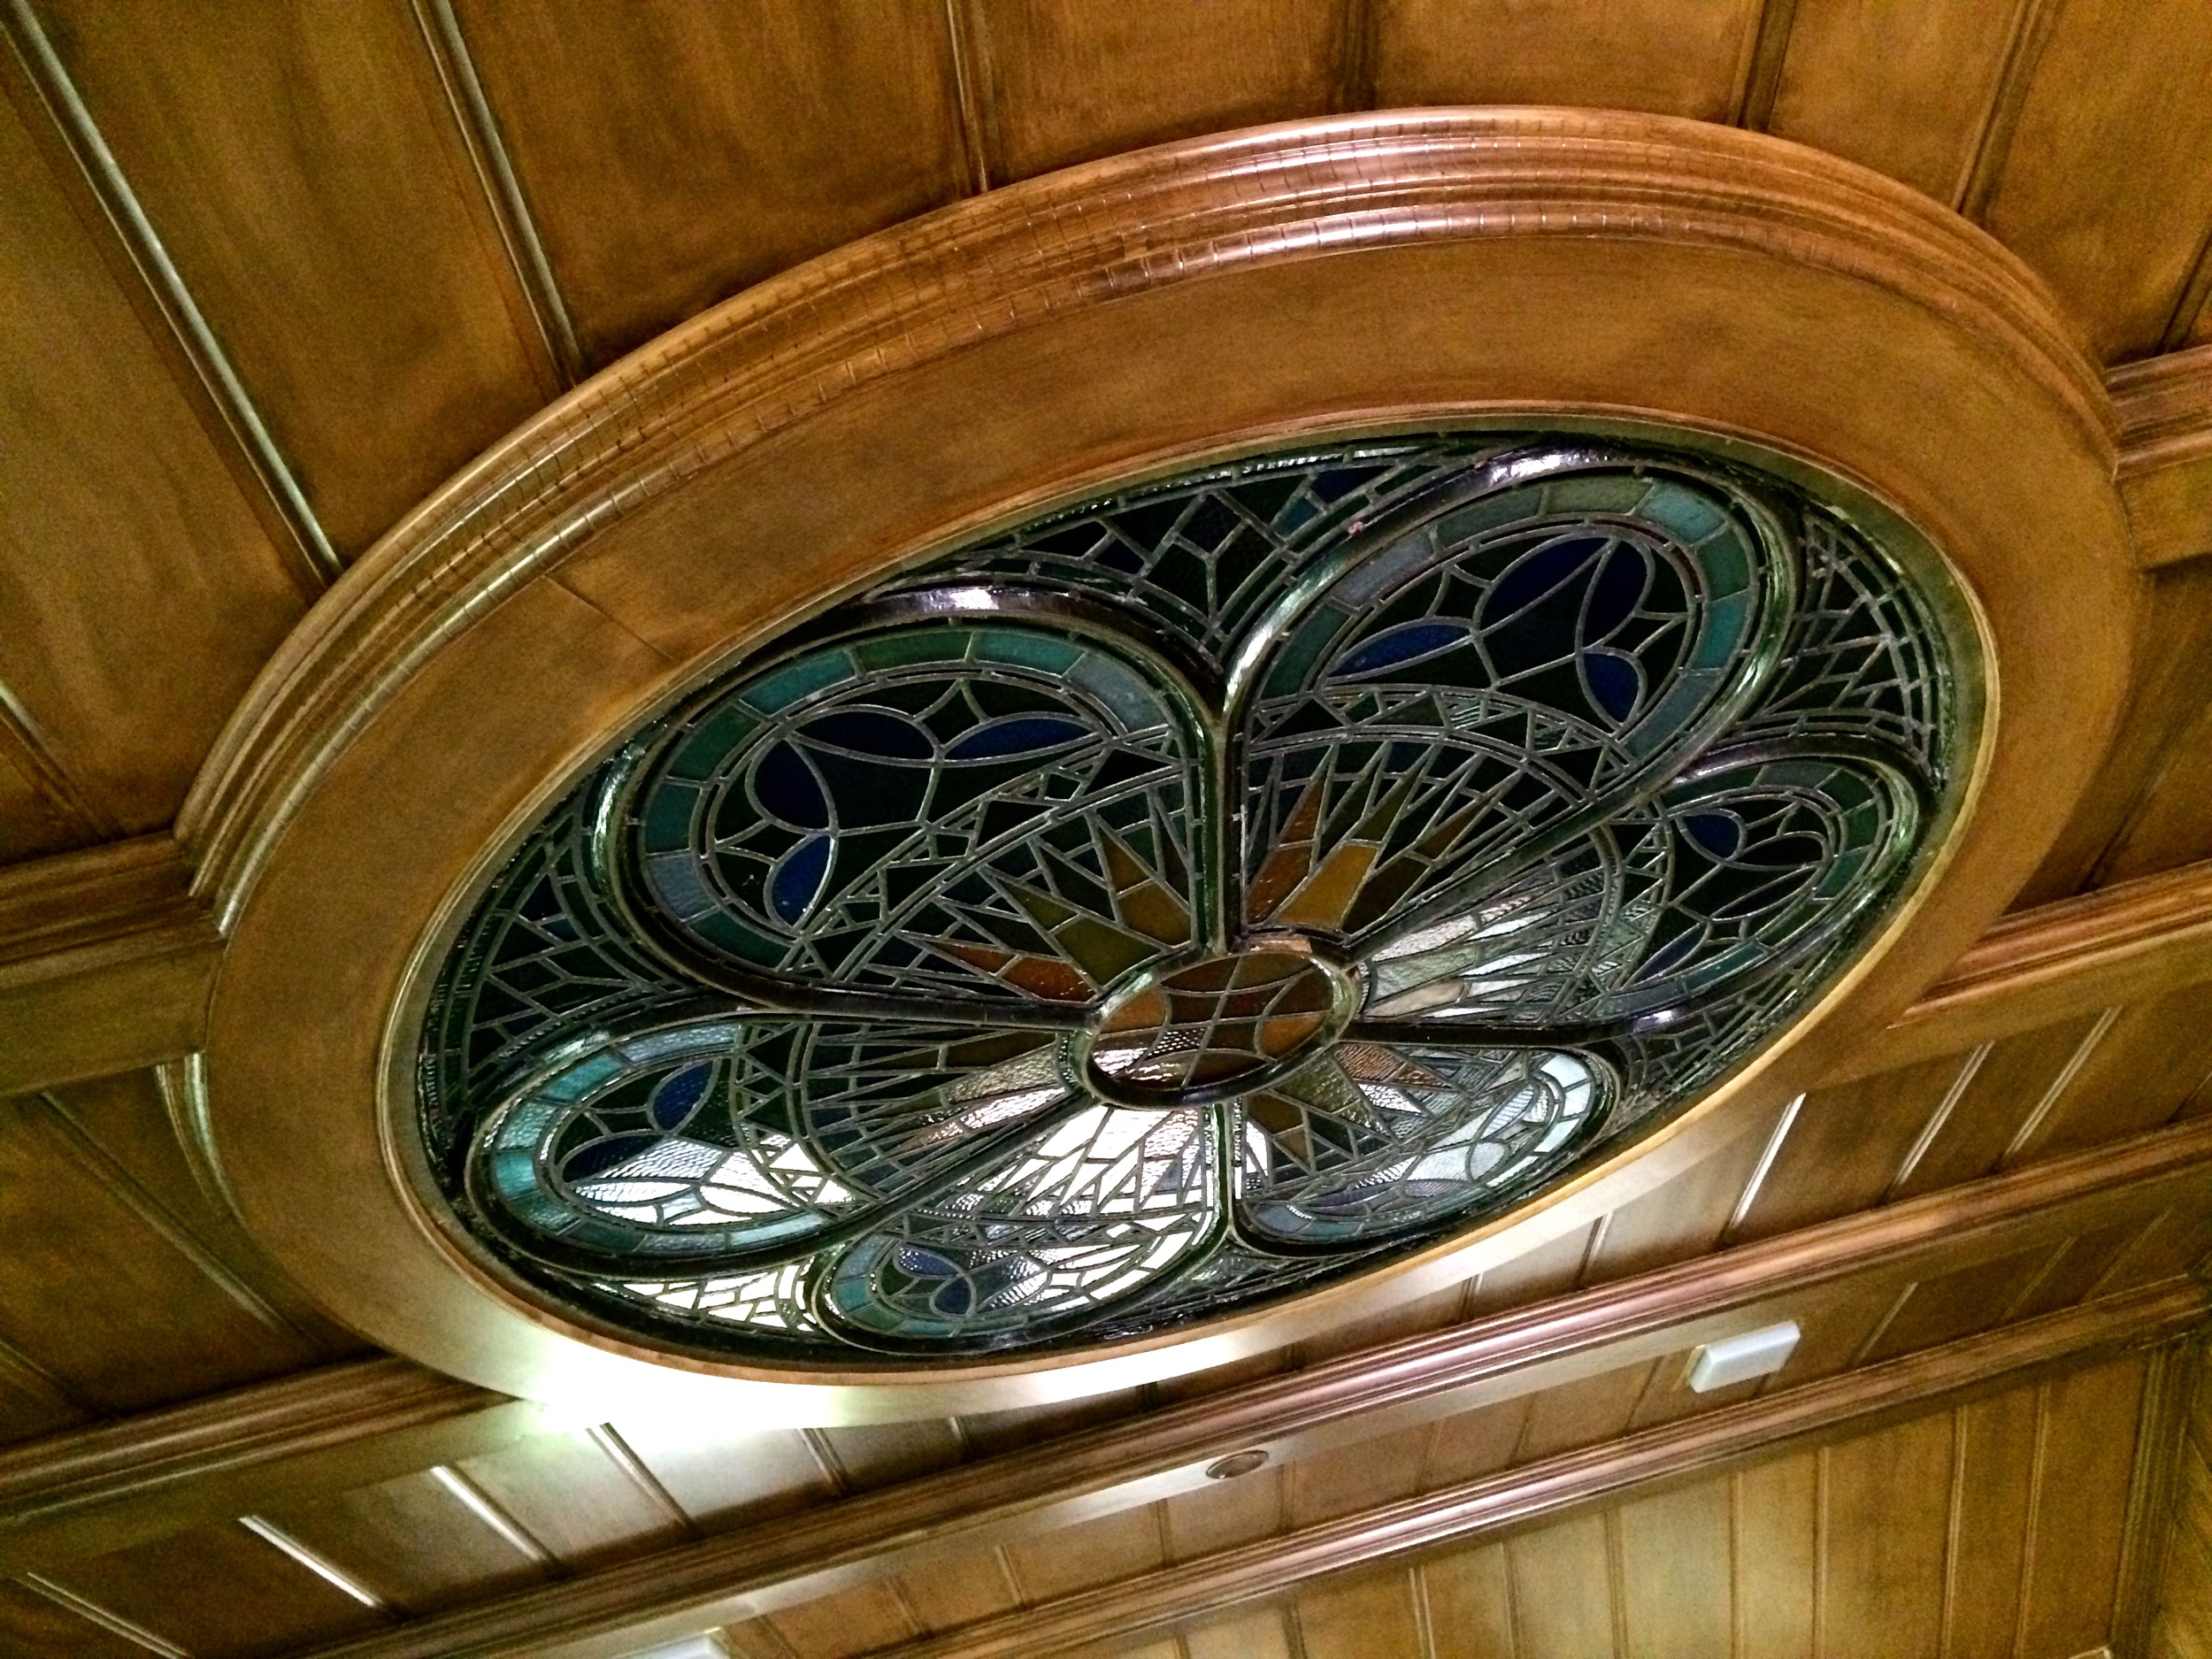 Orignial ceiling details.